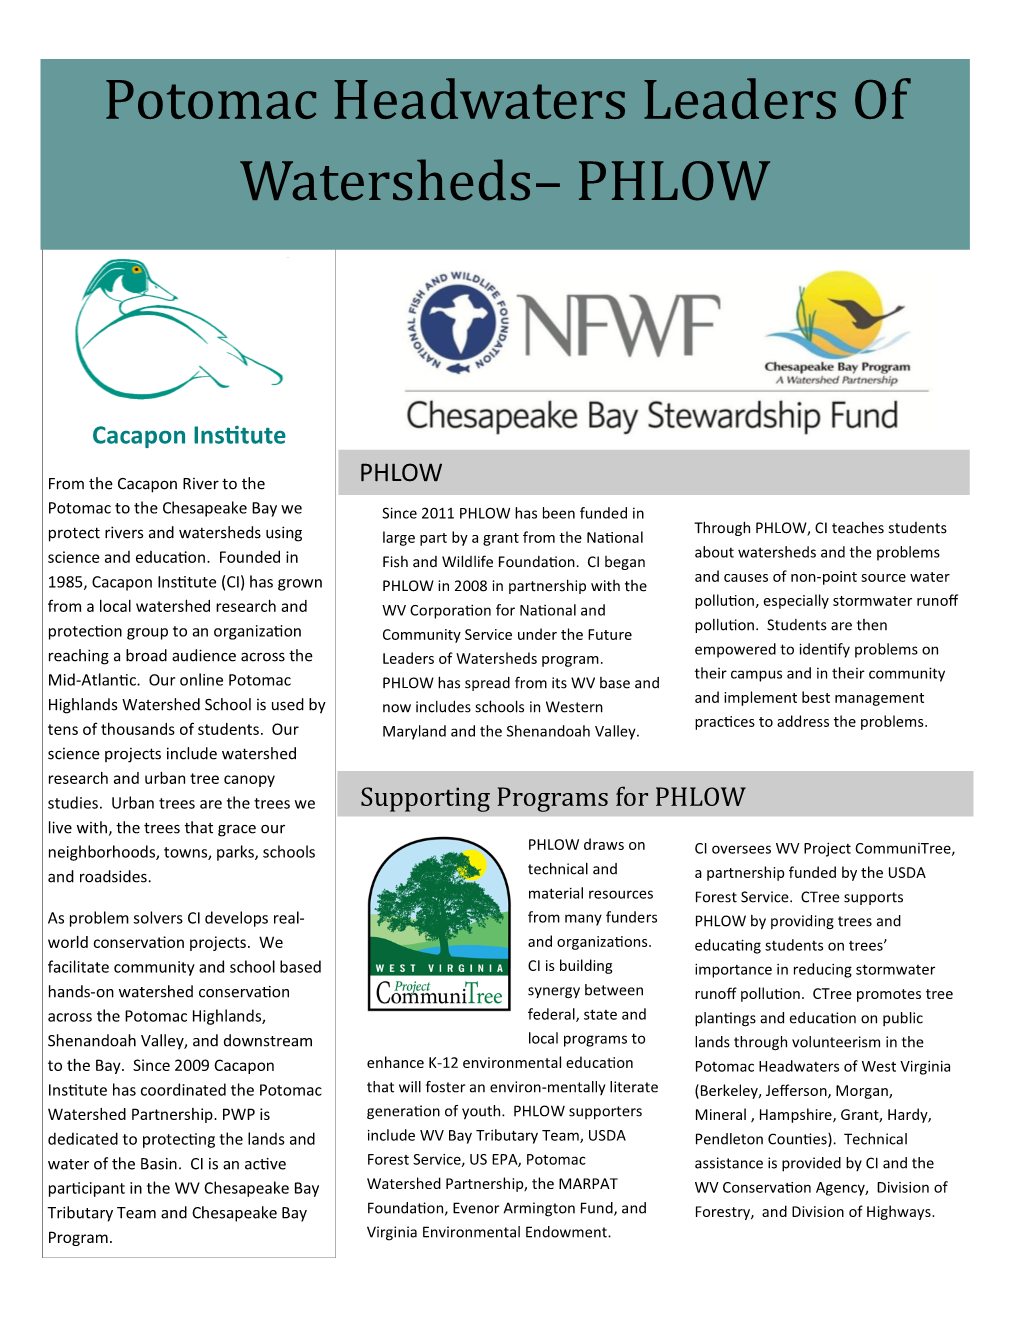 Potomac Headwaters Leaders of Watersheds– PHLOW